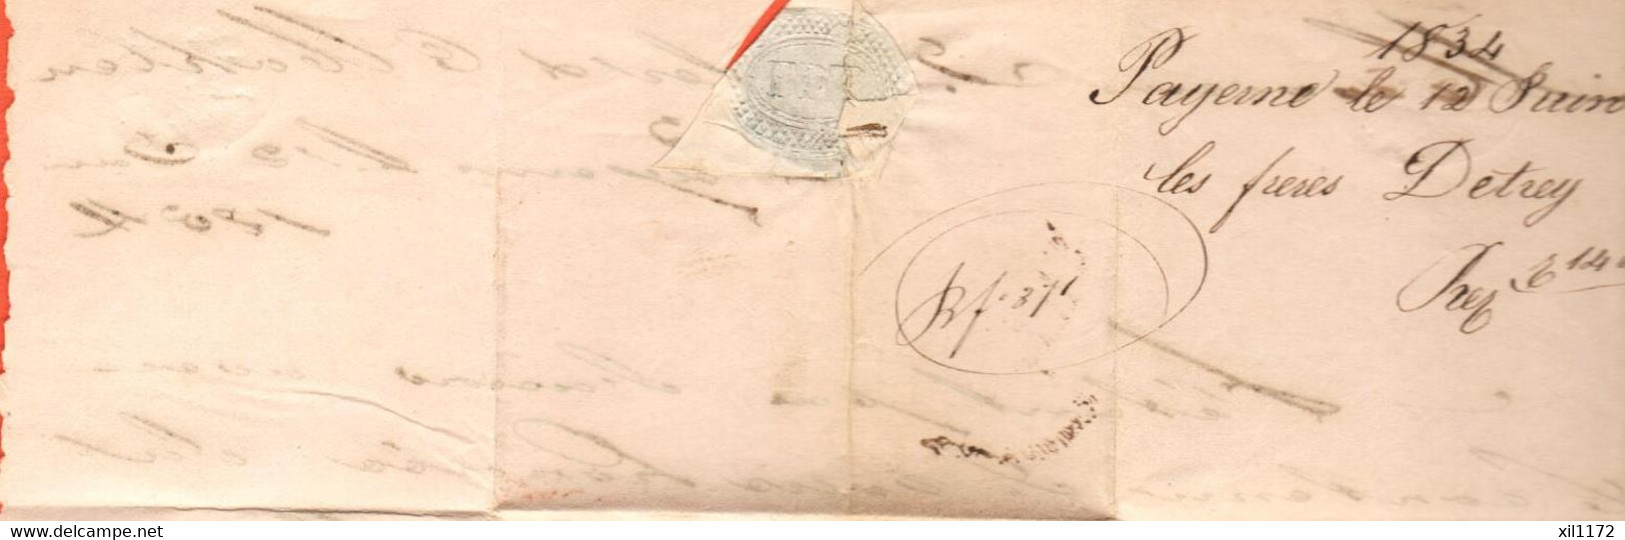 PPH2-04 RARE Lettre Envoyée De Payerne 12 Juin 1834 à Gessler Wohlen Aargau. Argovie - ...-1845 Préphilatélie